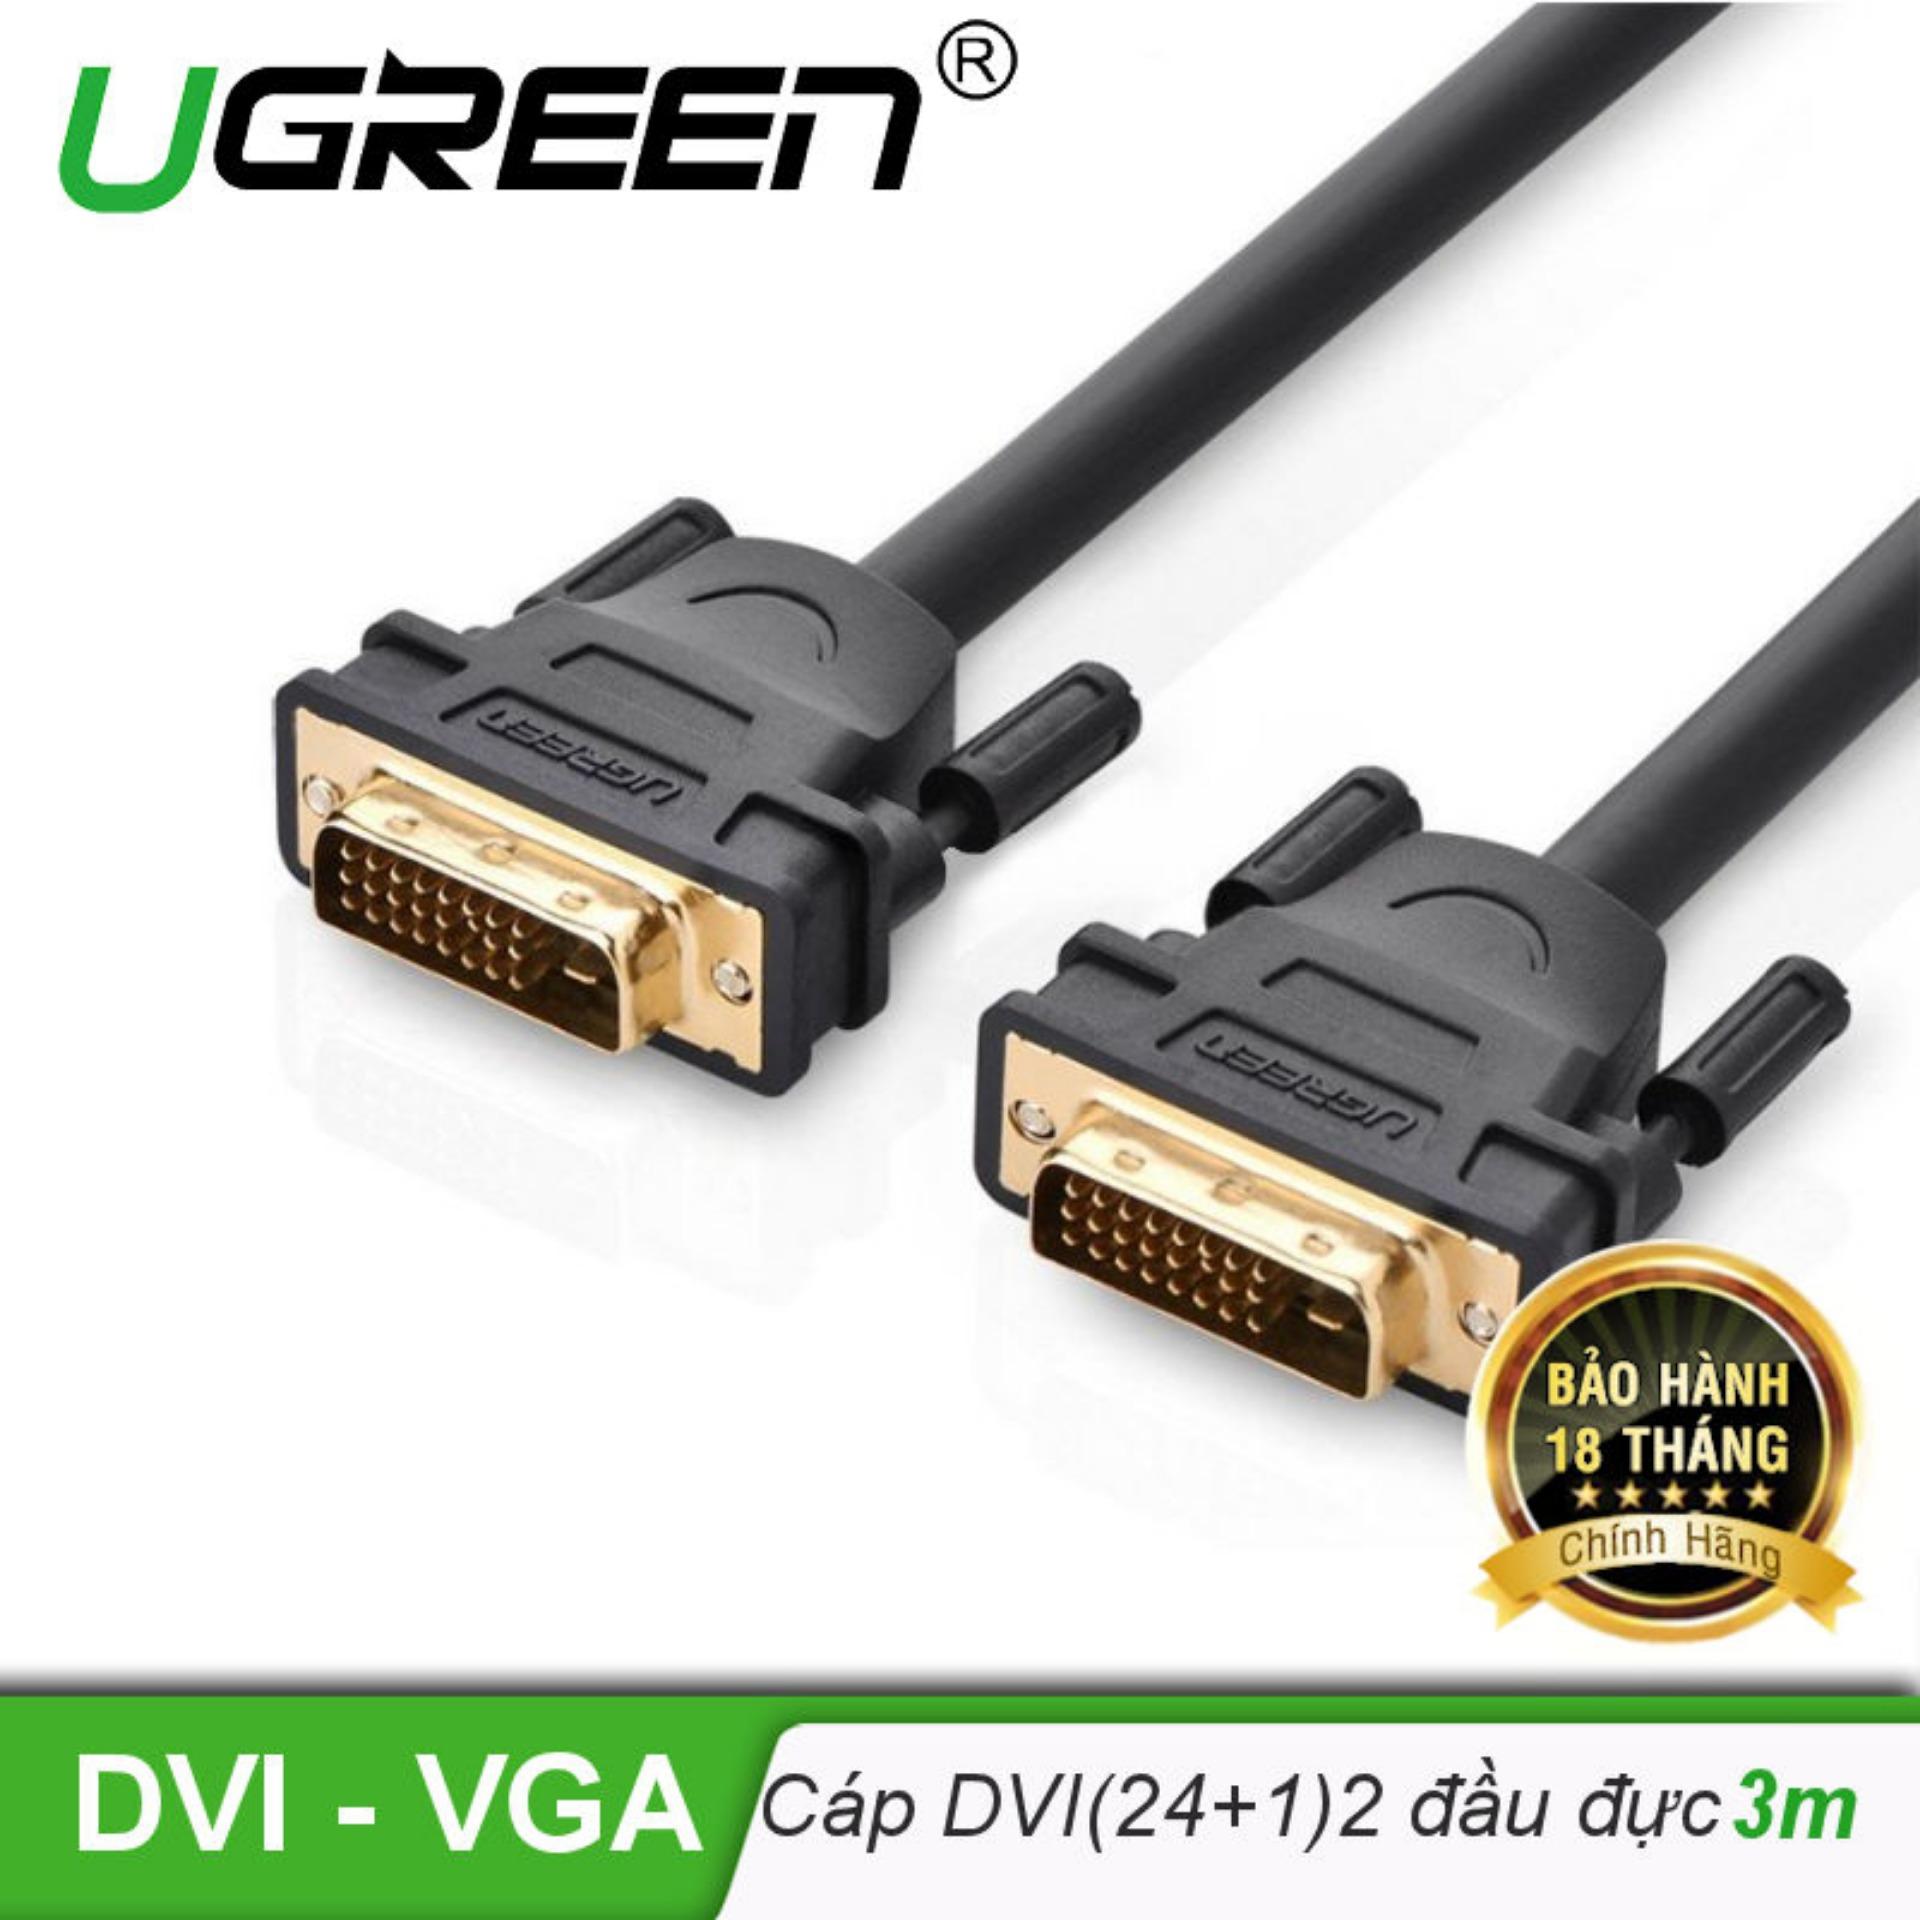 Cáp tín hiệu DVI-D (24+1) 2 đầu đực dài 3m UGREEN DV101 11607 (đen)